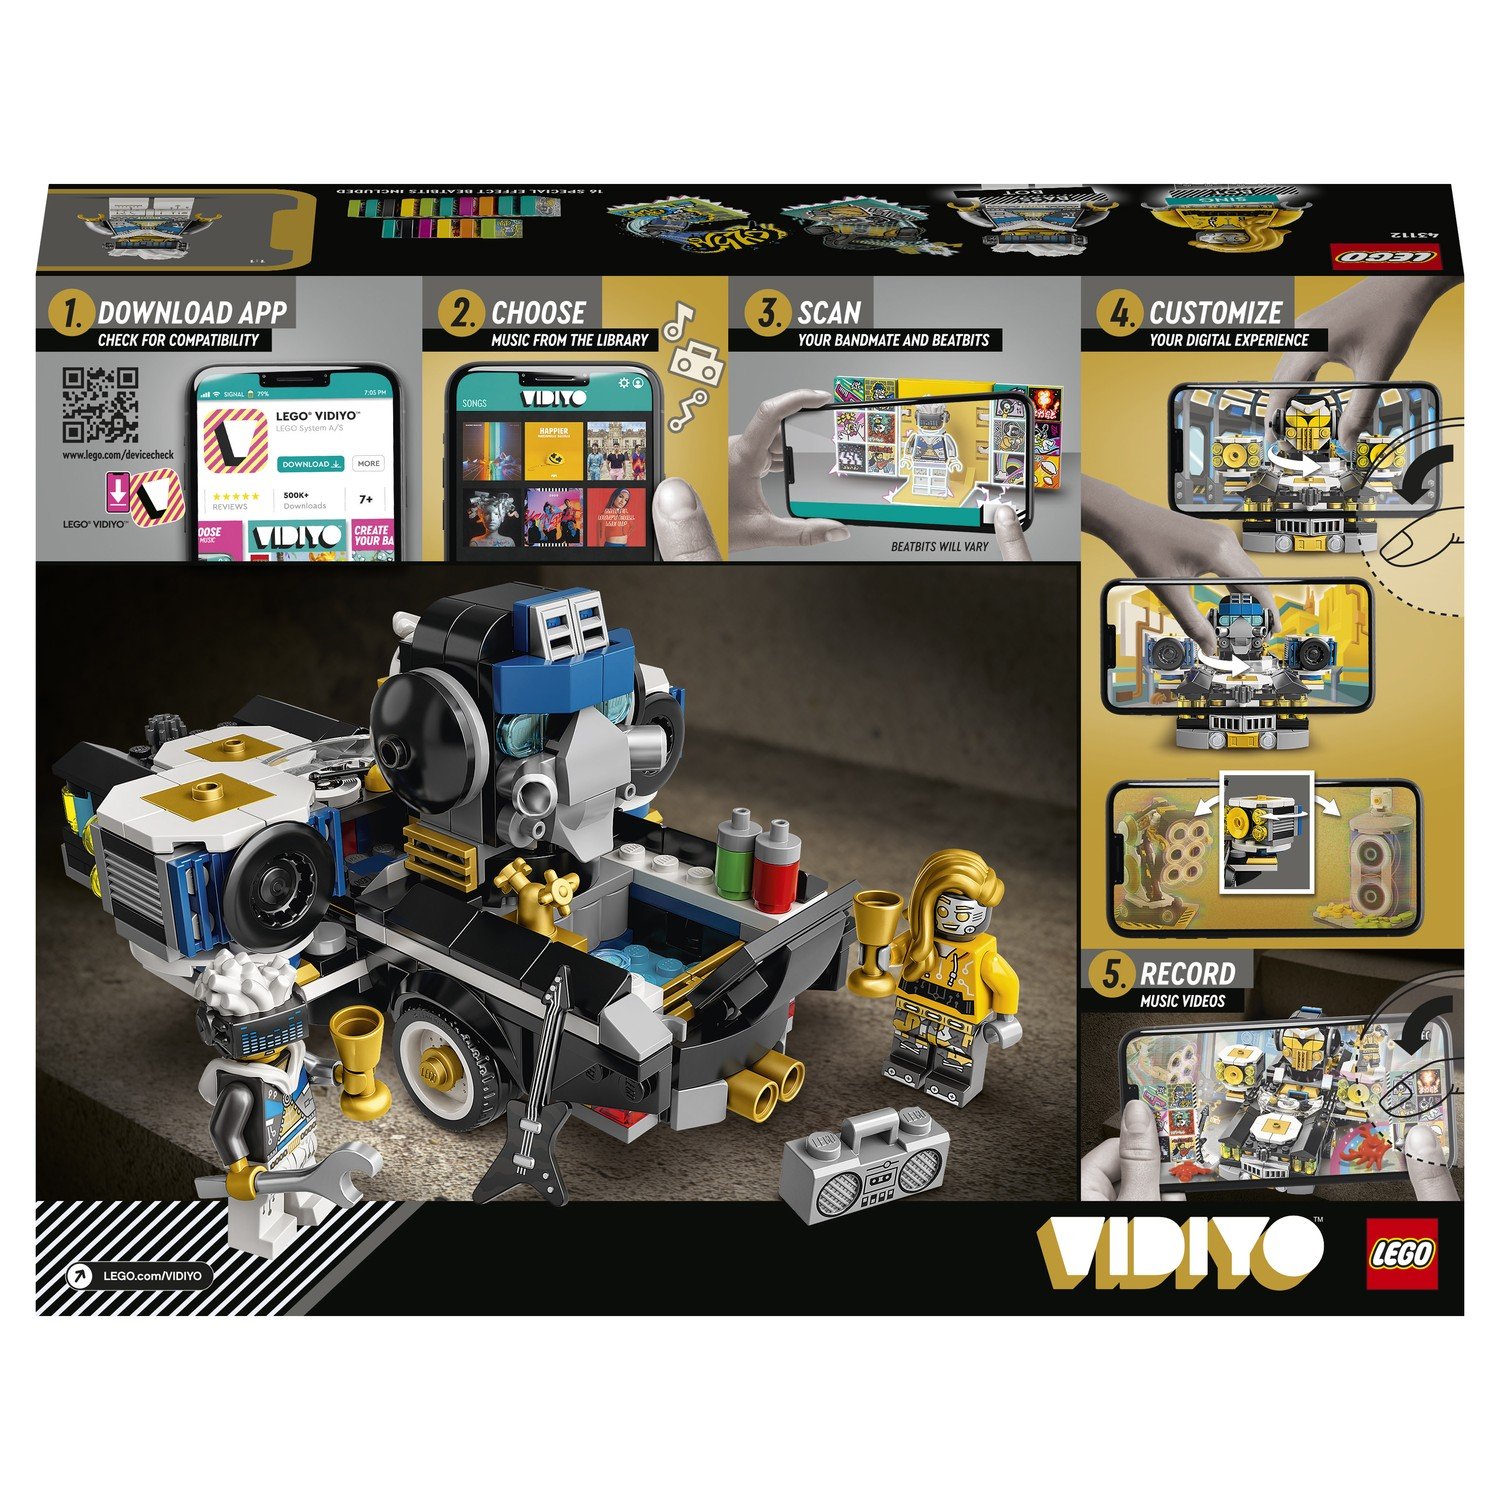 Конструктор LEGO VIDIYO Robo HipHop Car (Машина Хип-Хоп Робота) 43112